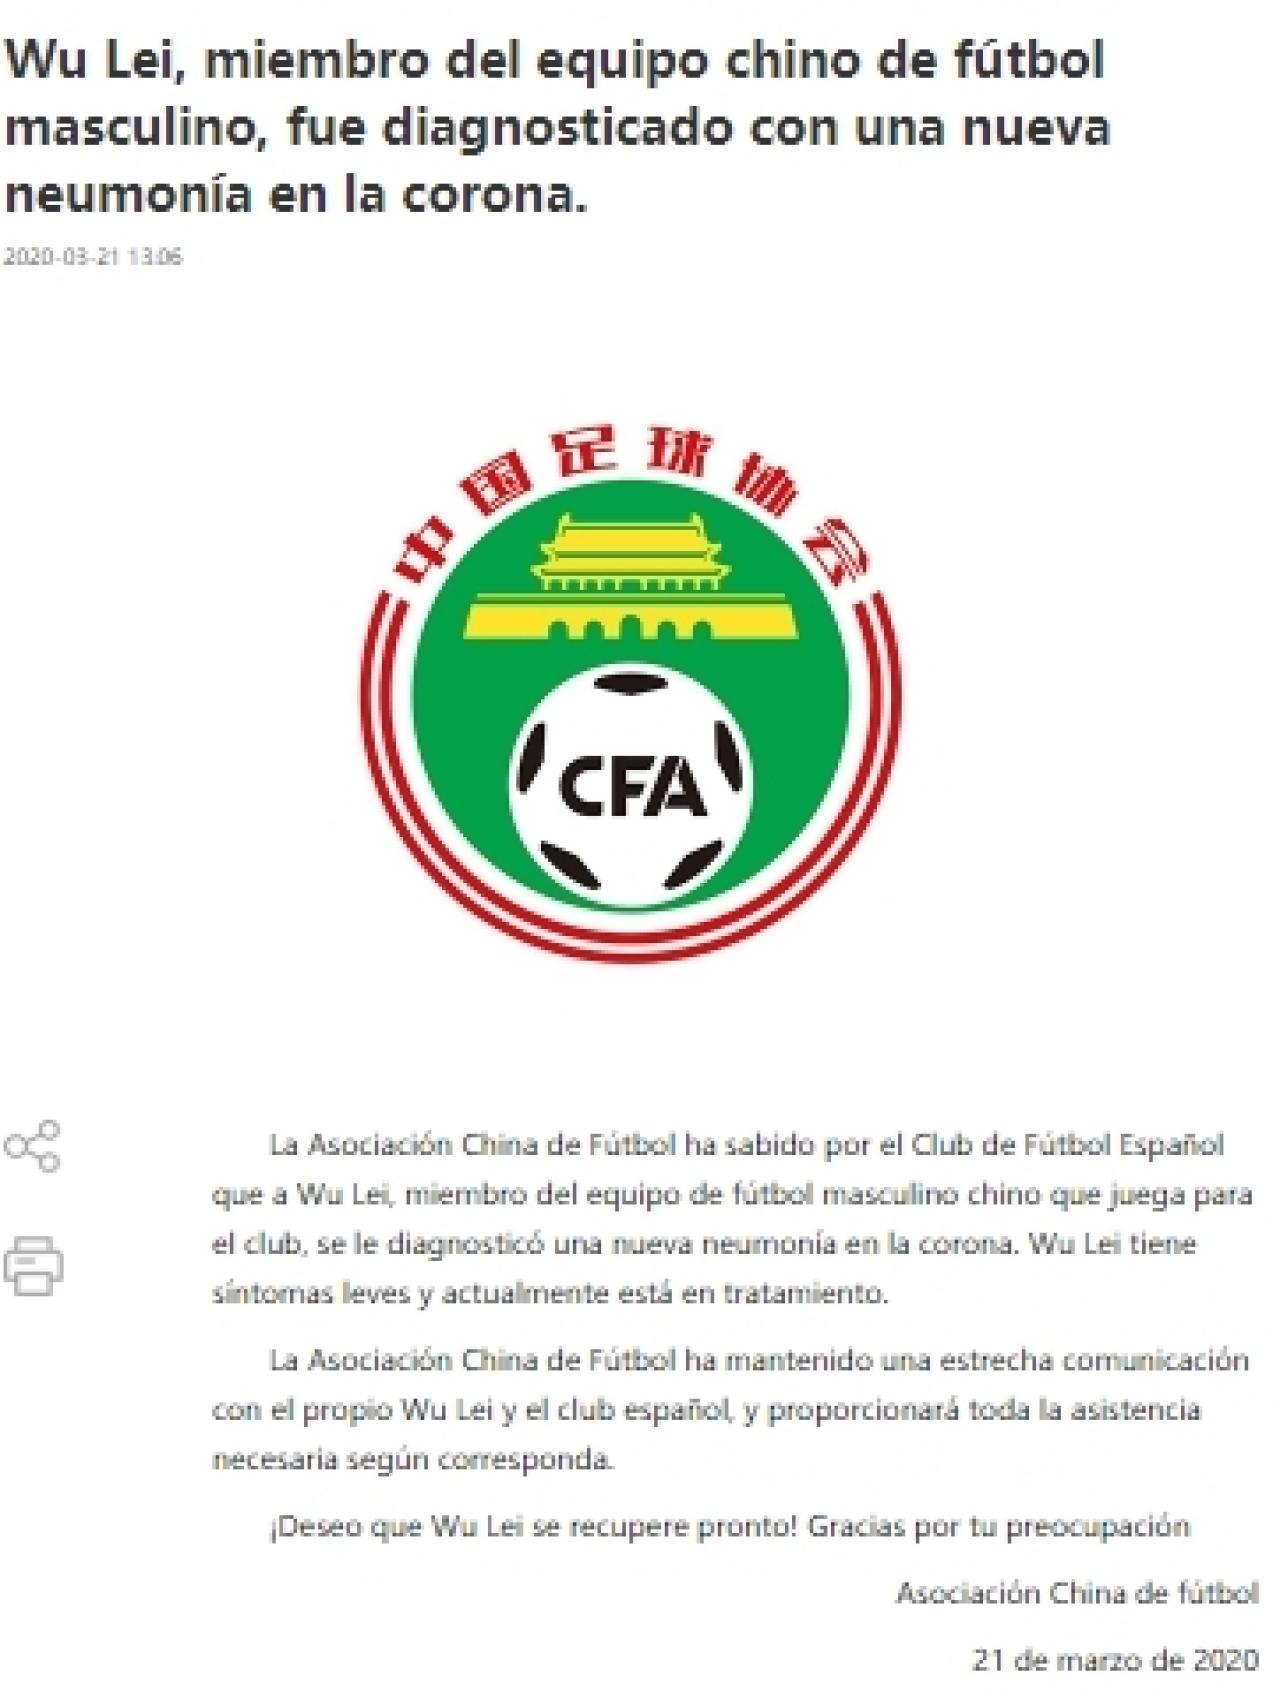 El comunicado de la Asociación China de Fútbol confirmando el positivo de Wu Lei